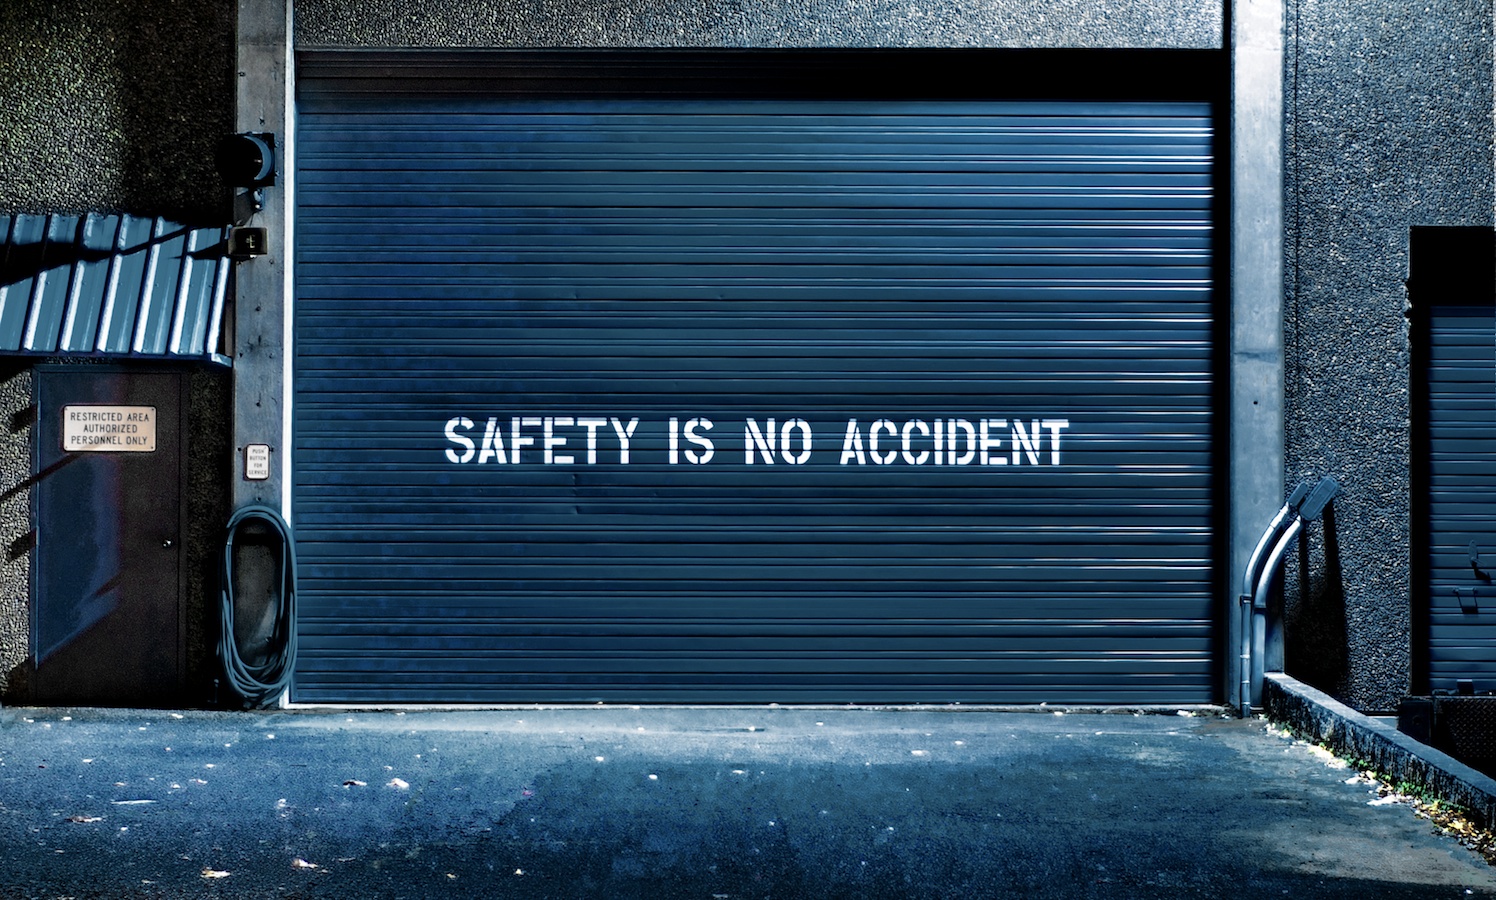 SafetyIsNoAccident.jpg